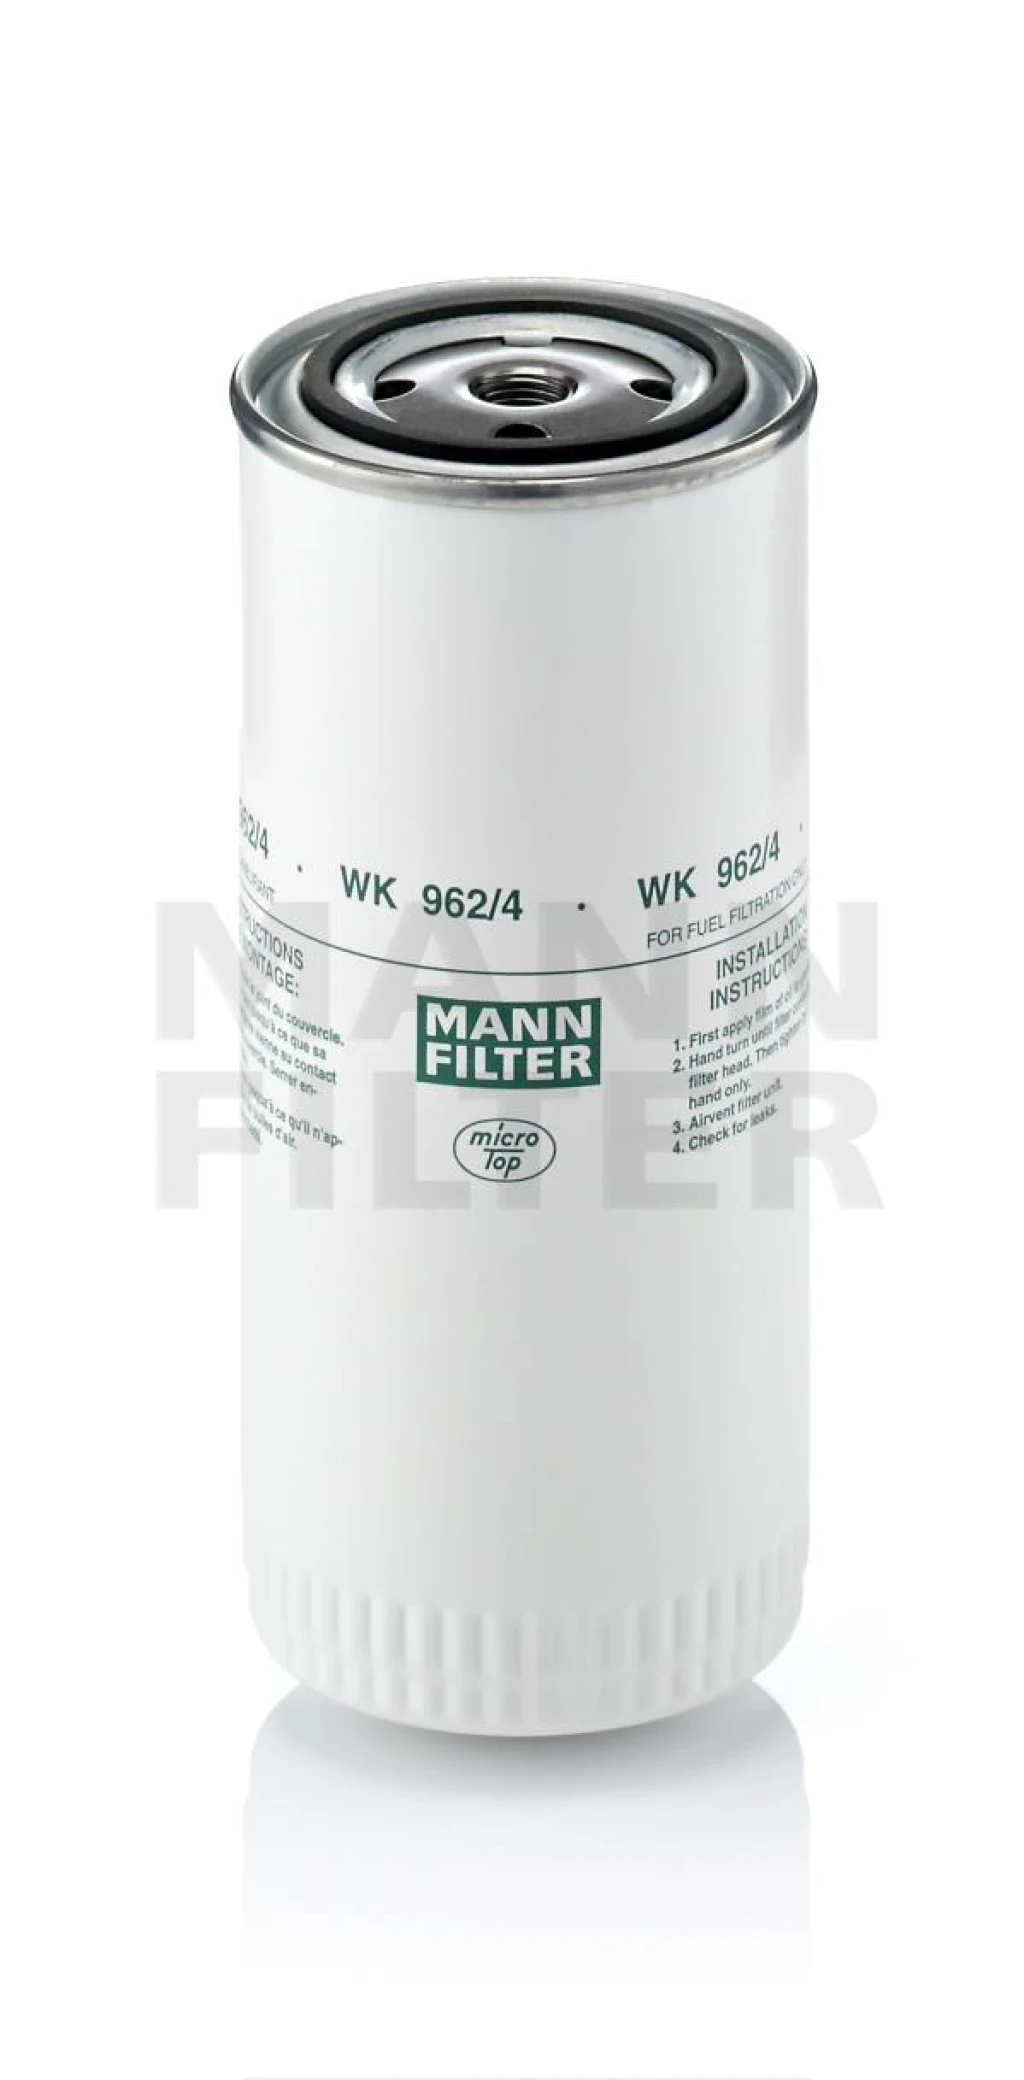 Фильтр топливный MANN-FILTER WK962/4